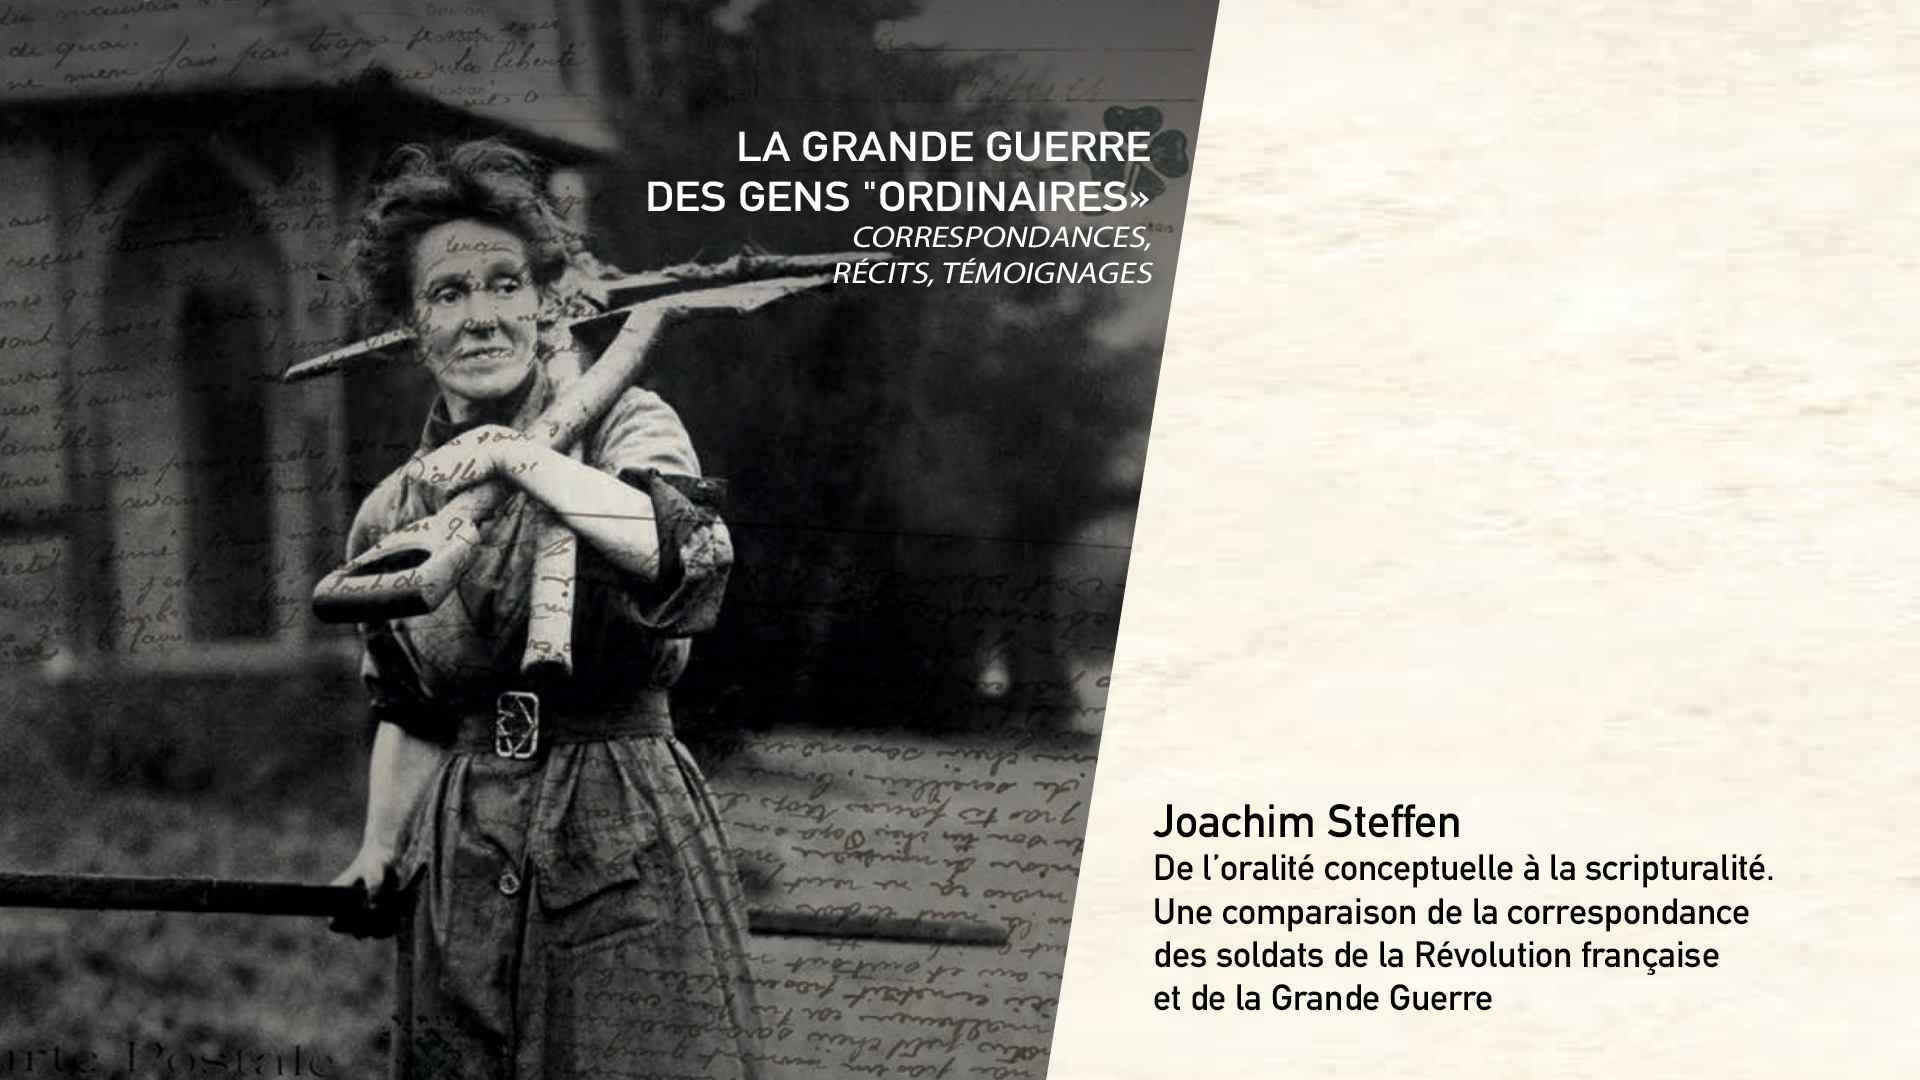 Joachim Steffen - De l’oralité conceptuelle à la scripturalité. Une comparaison de la correspondance des soldats de la Révolution française et de la Grande Guerre.